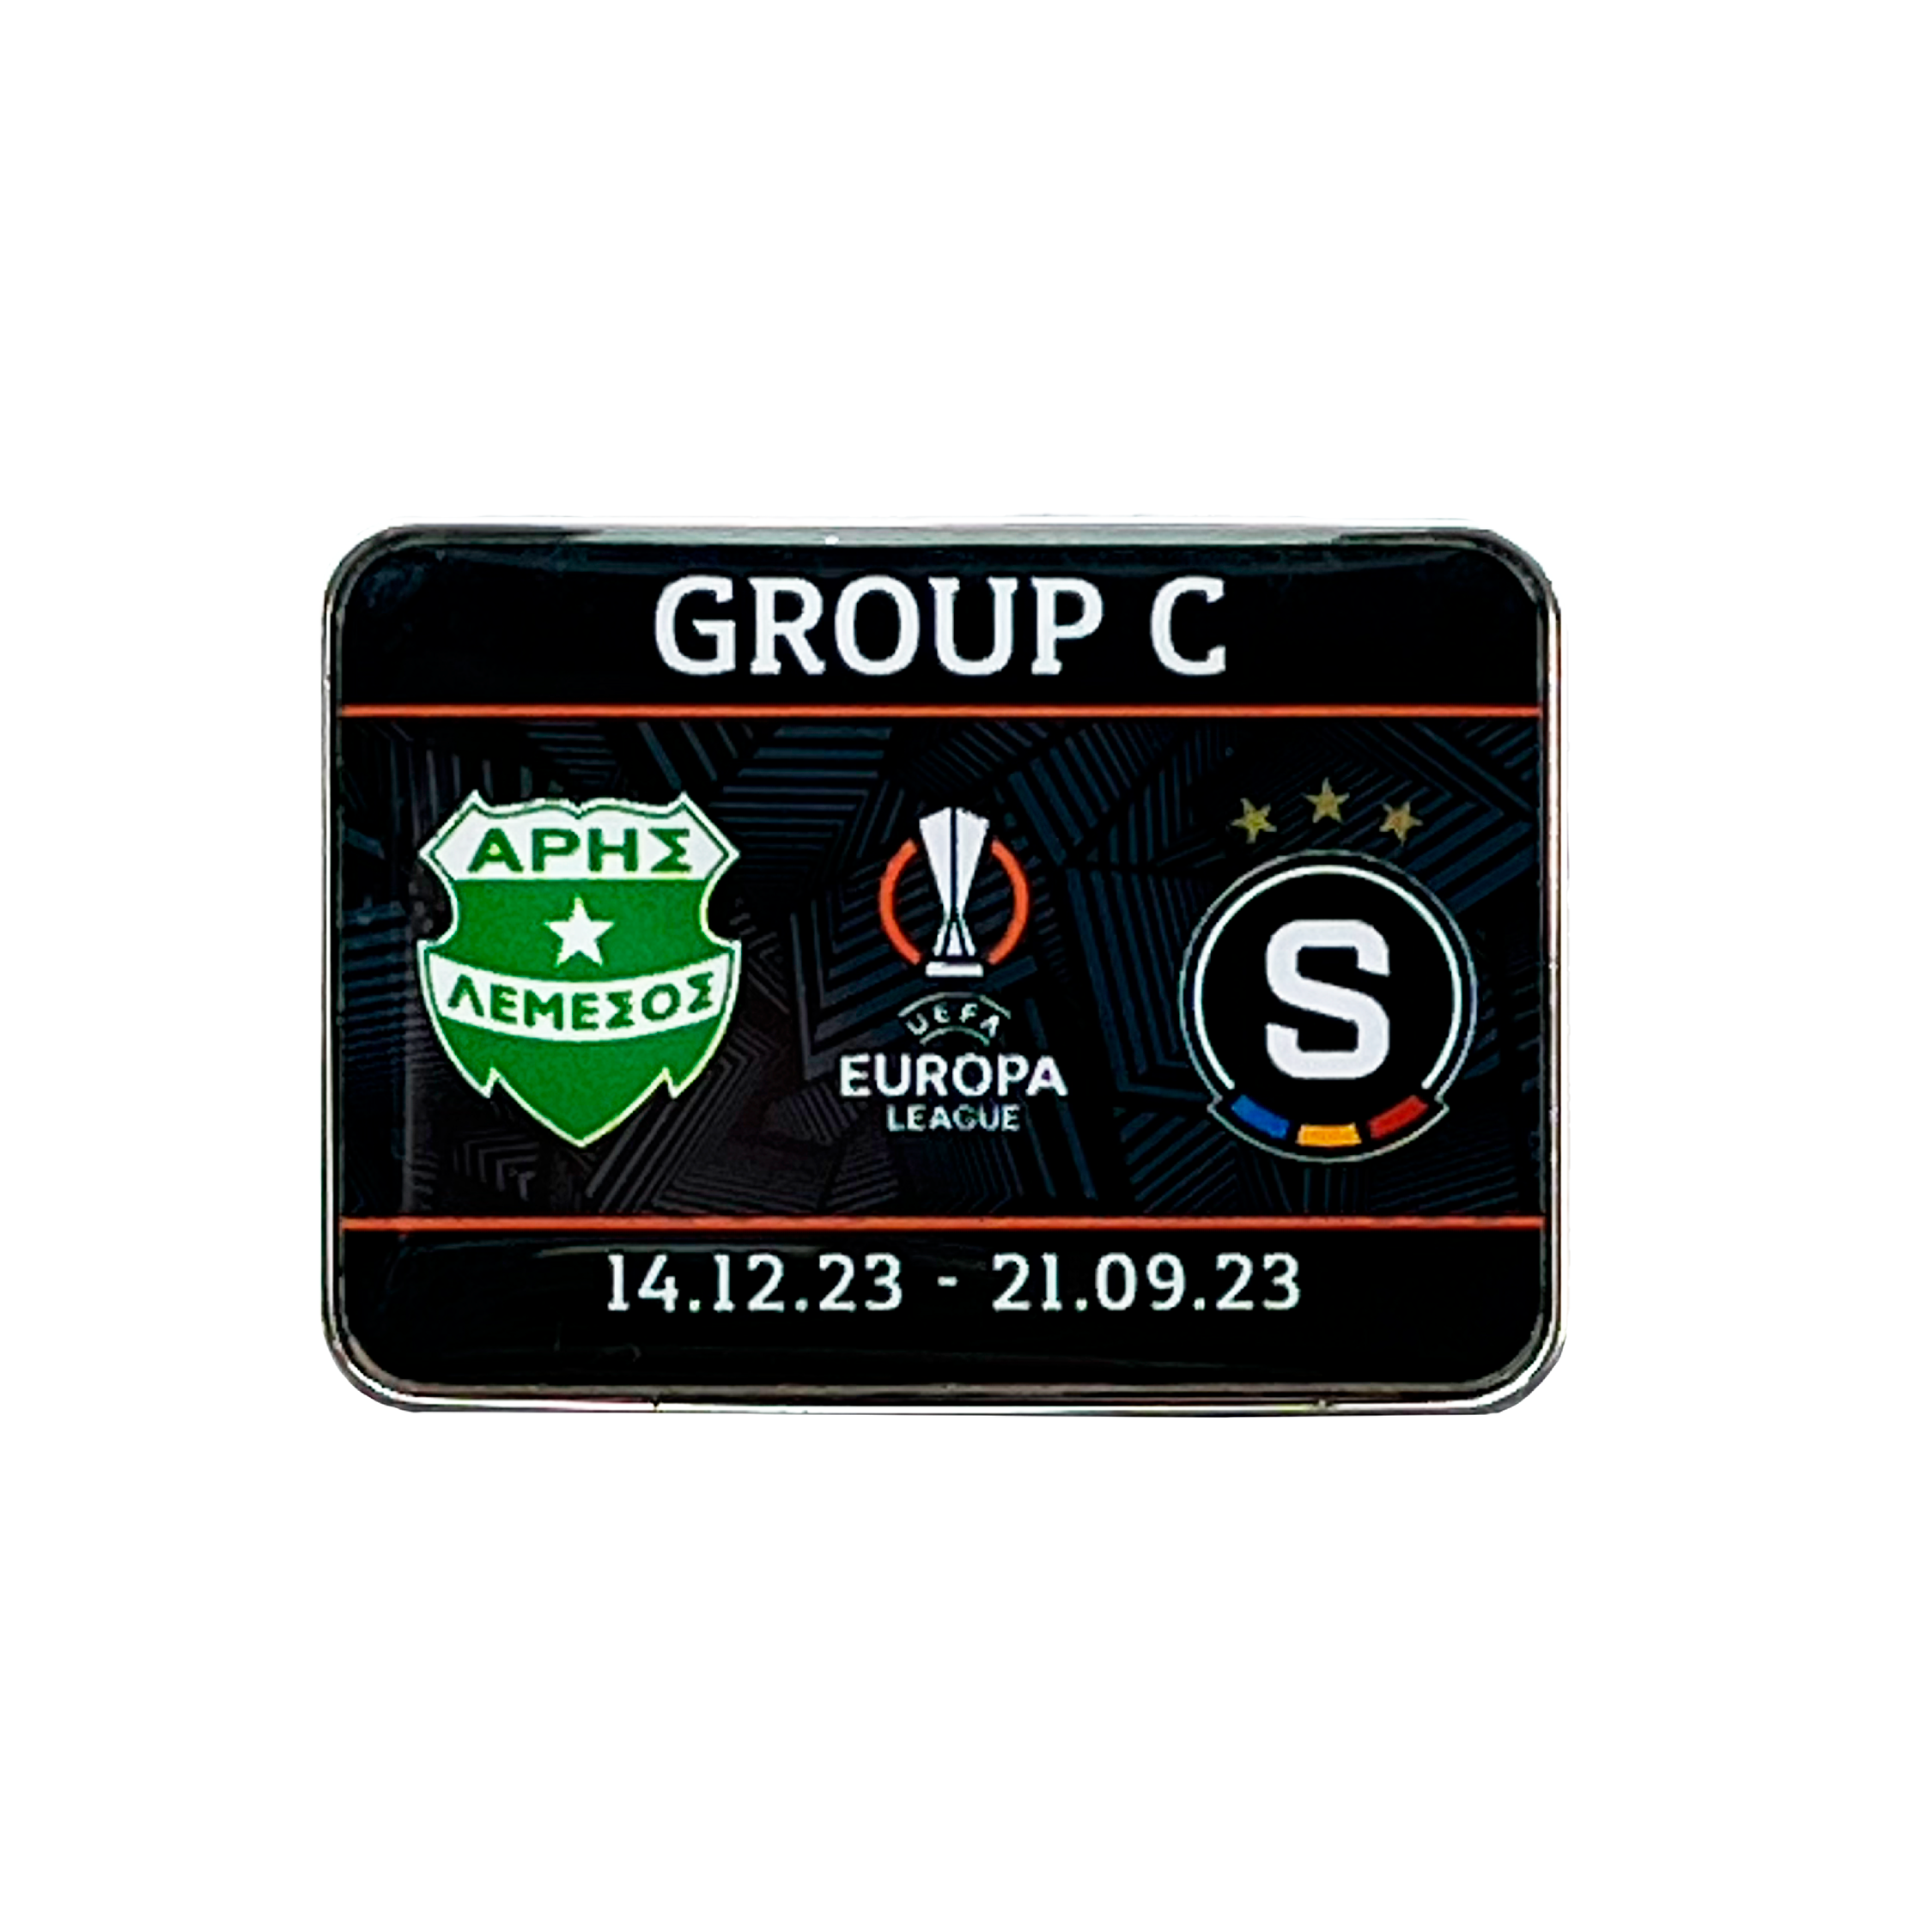  Aris FC-AC Sparta Europa League Pin